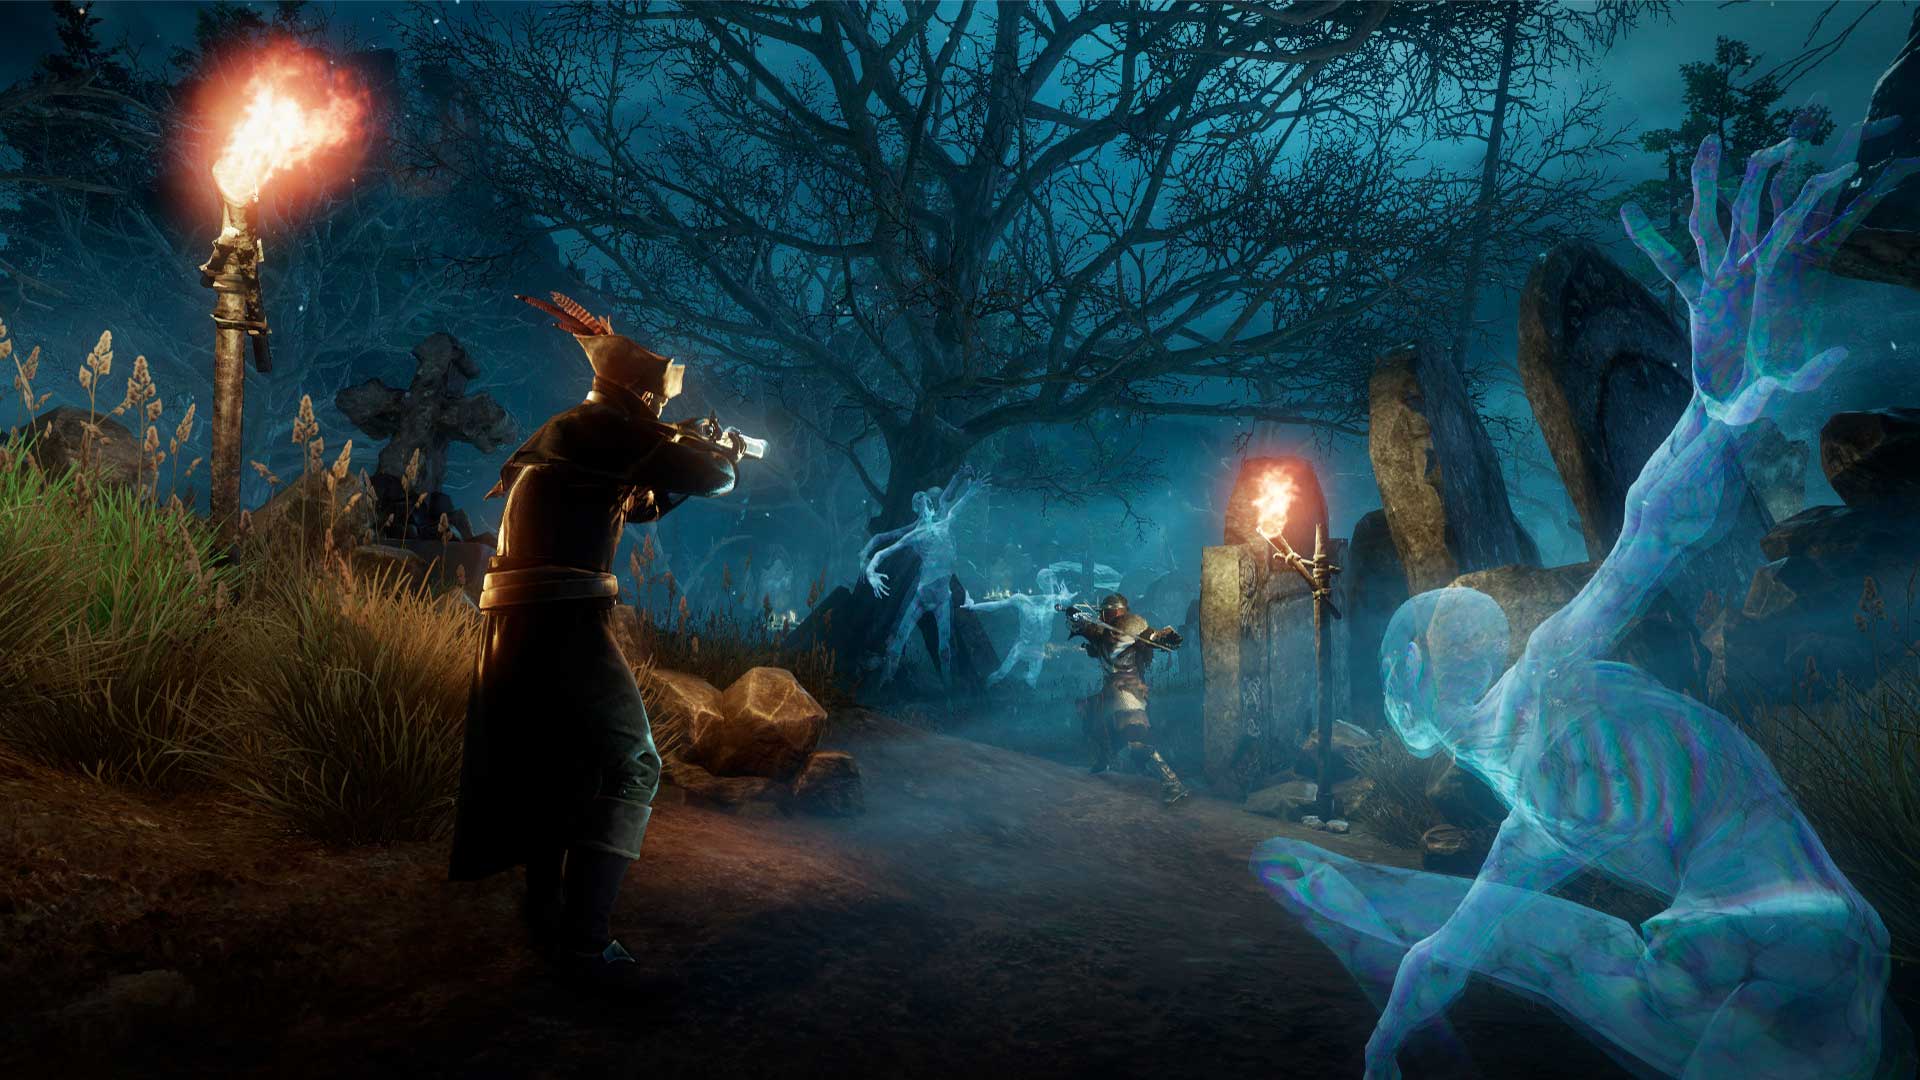 Ein Bild von Spielern der Neuen Welt, die Musketen auf einem Friedhof abfeuern